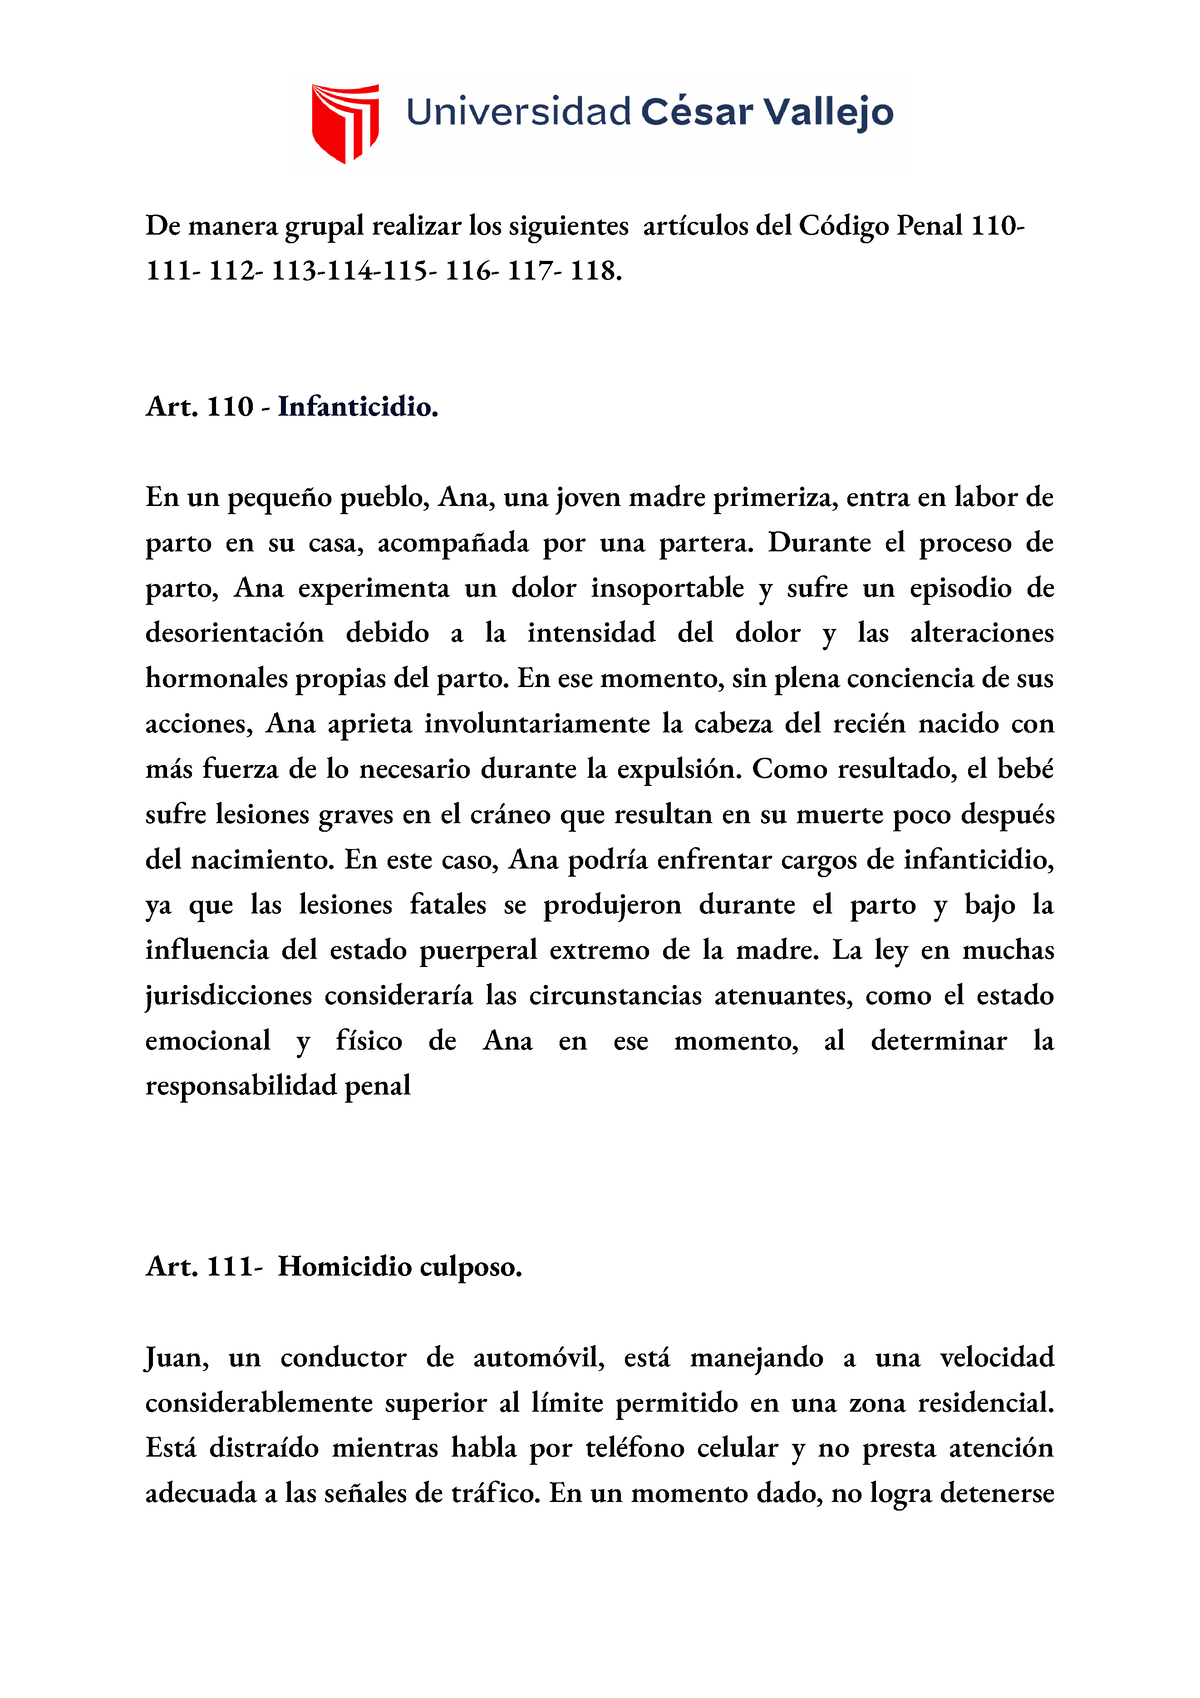 Derecho Penal - ejemplos de articulos del 110 al 118 - De manera grupal ...